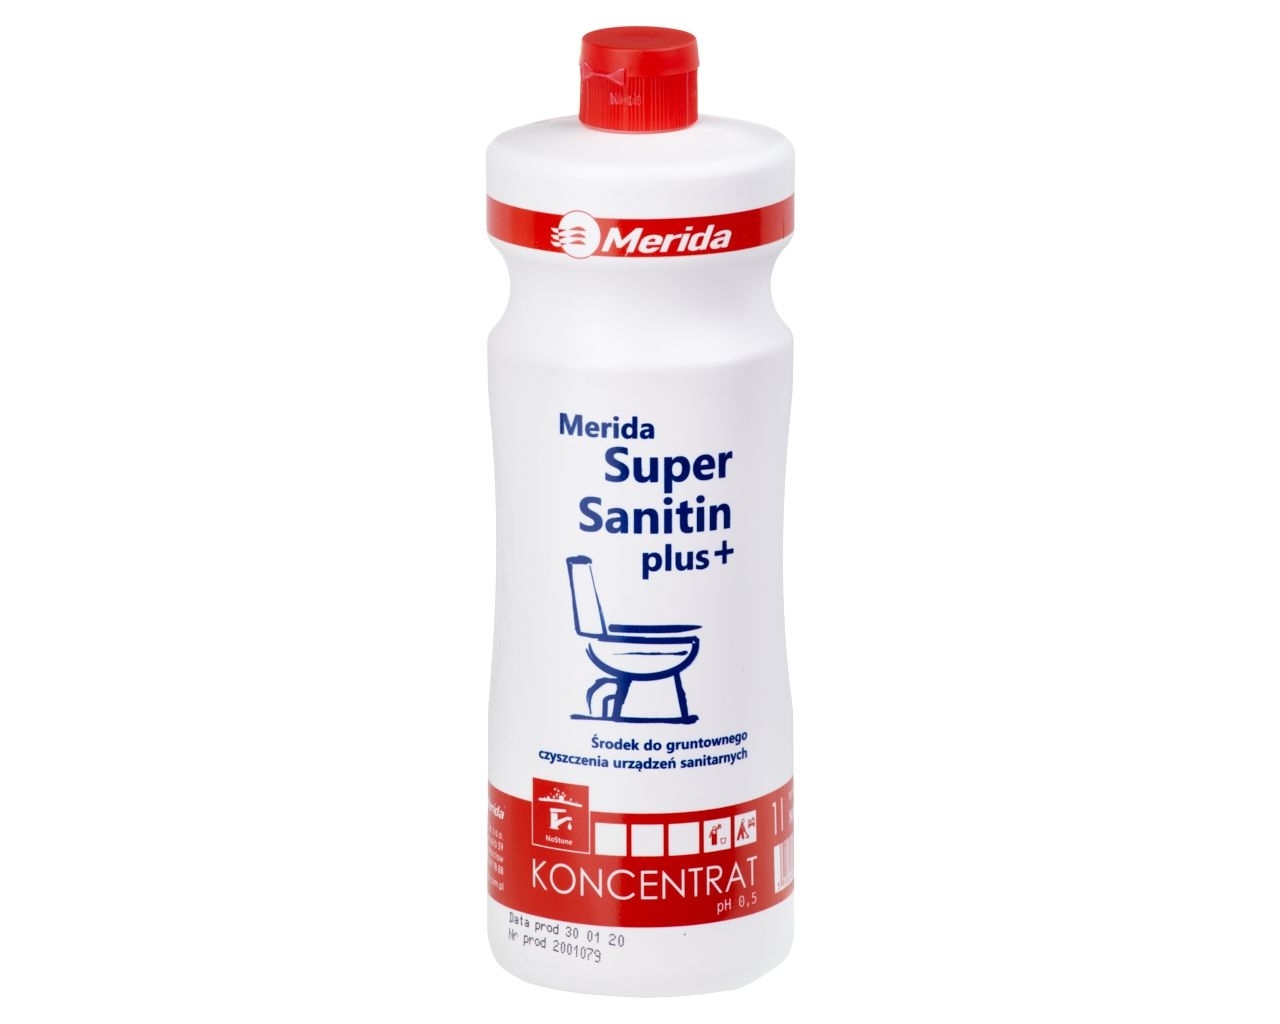 MERIDA SUPER SANITIN PLUS+ Środek do gruntownego czyszczenia urządzeń sanitarnych, butelka 1 l